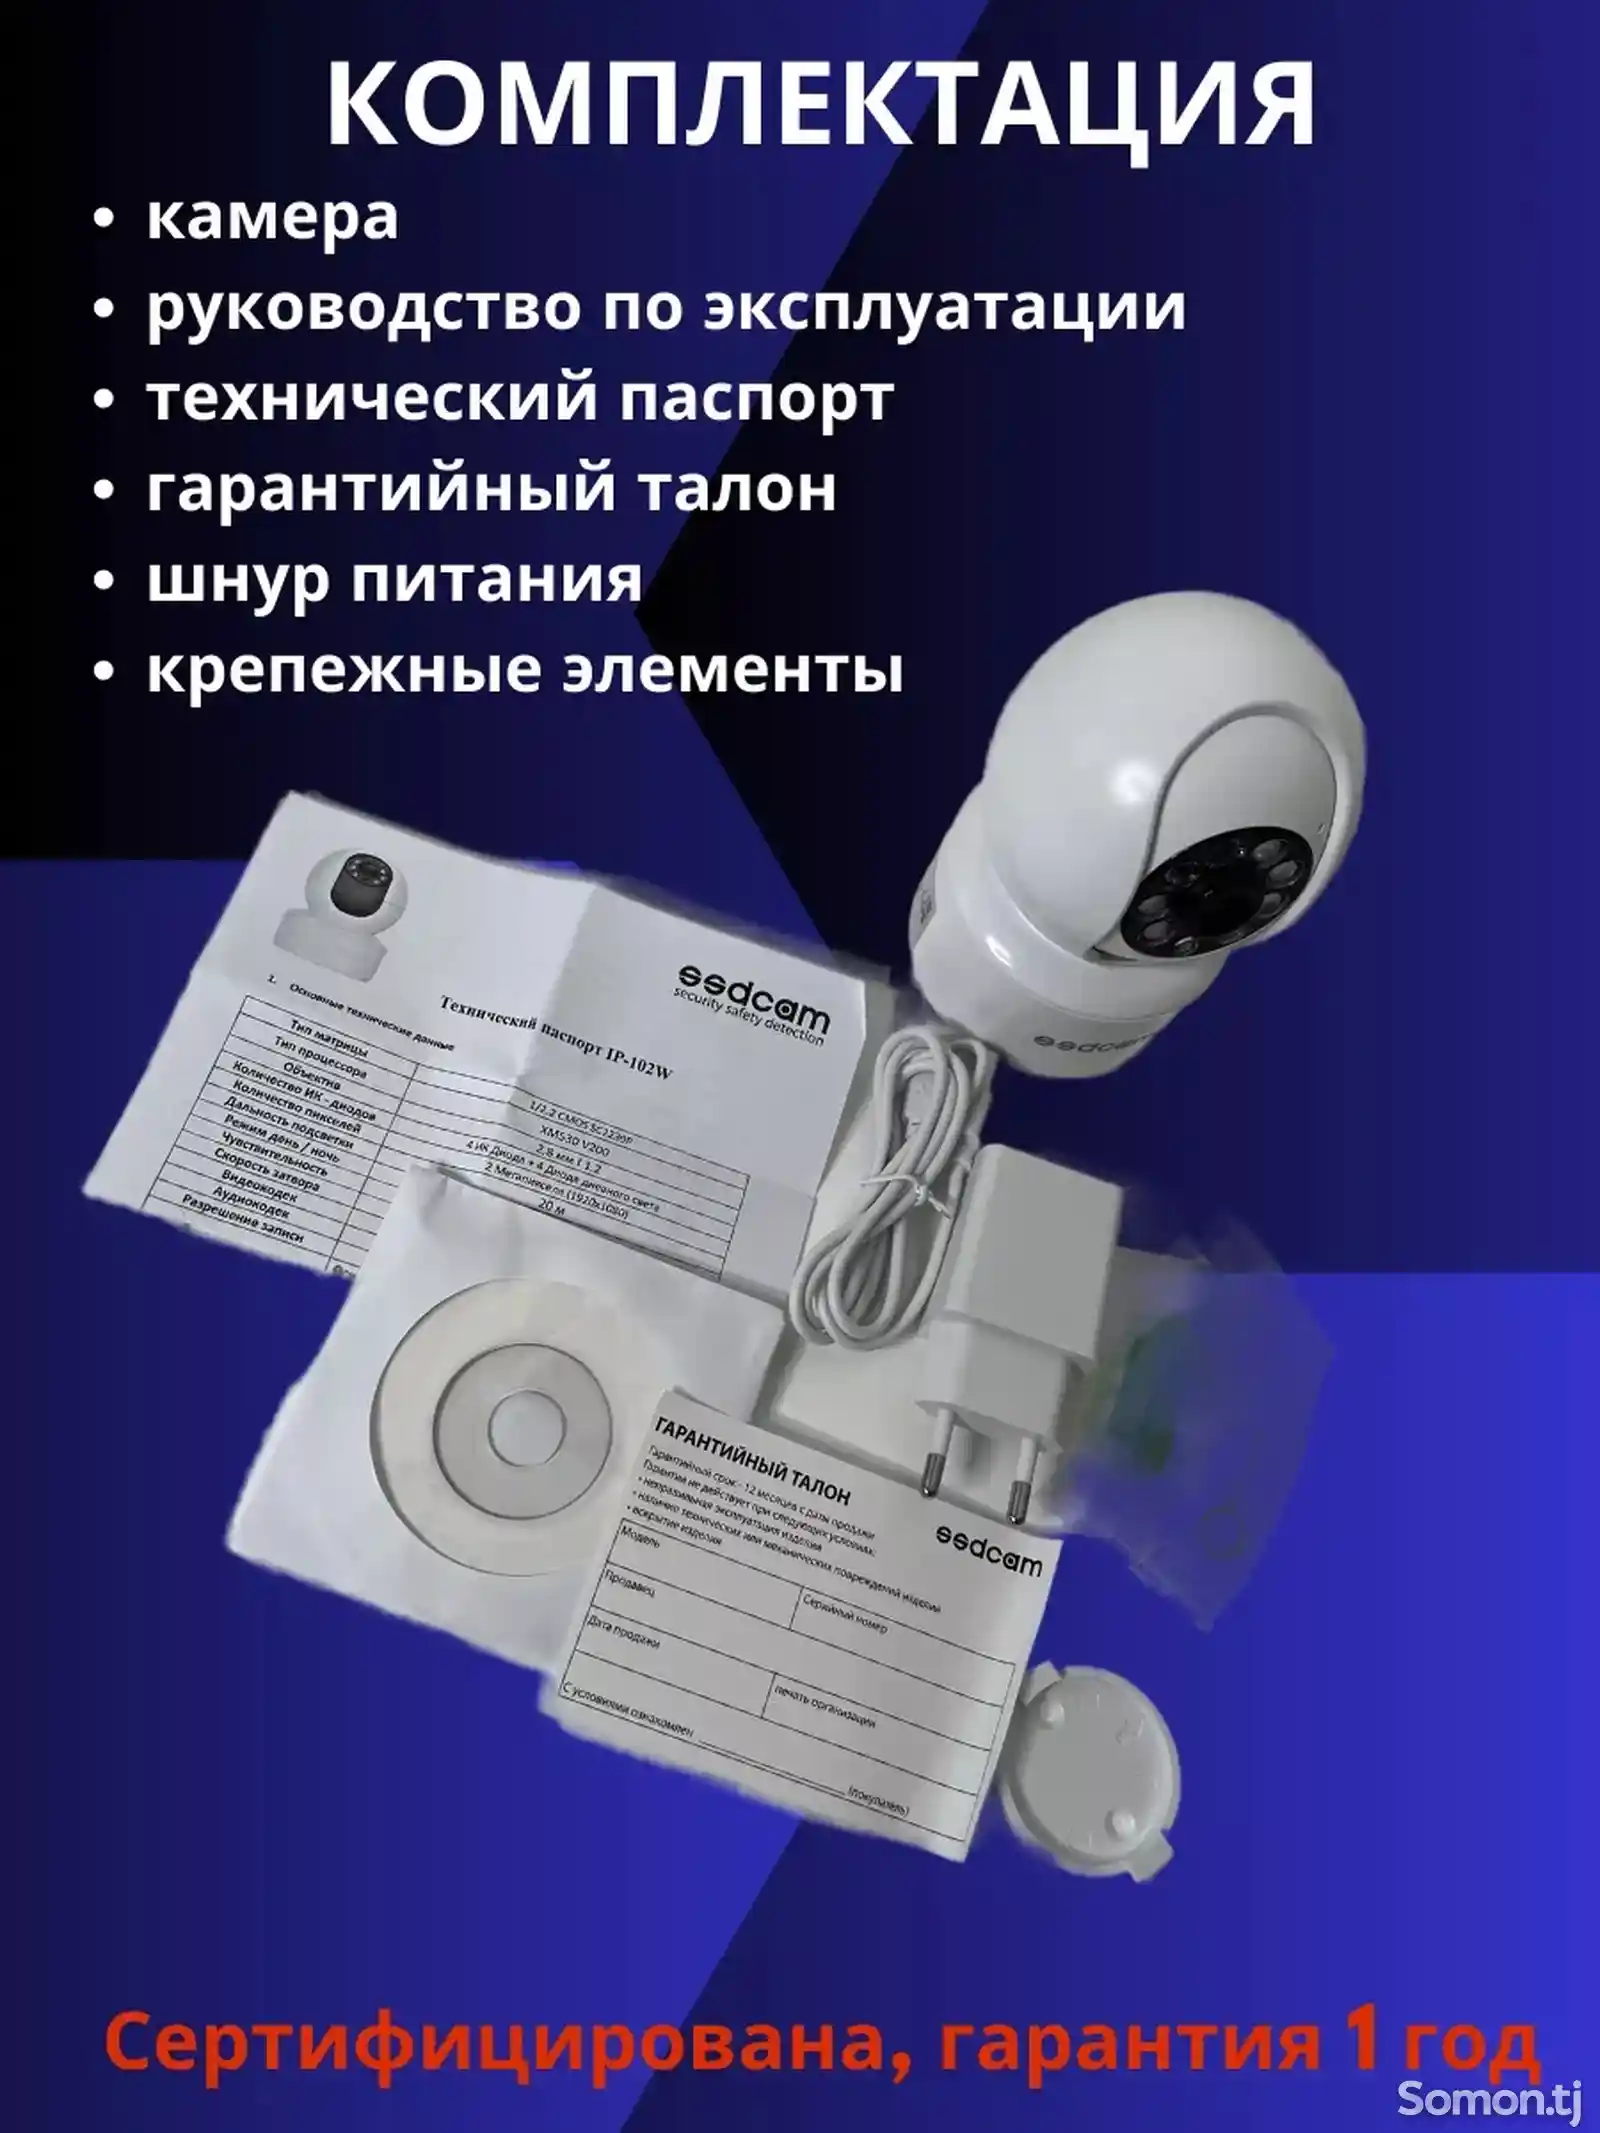 Камеры видеонаблюдения для дома и улицы поворотная с wifi-6